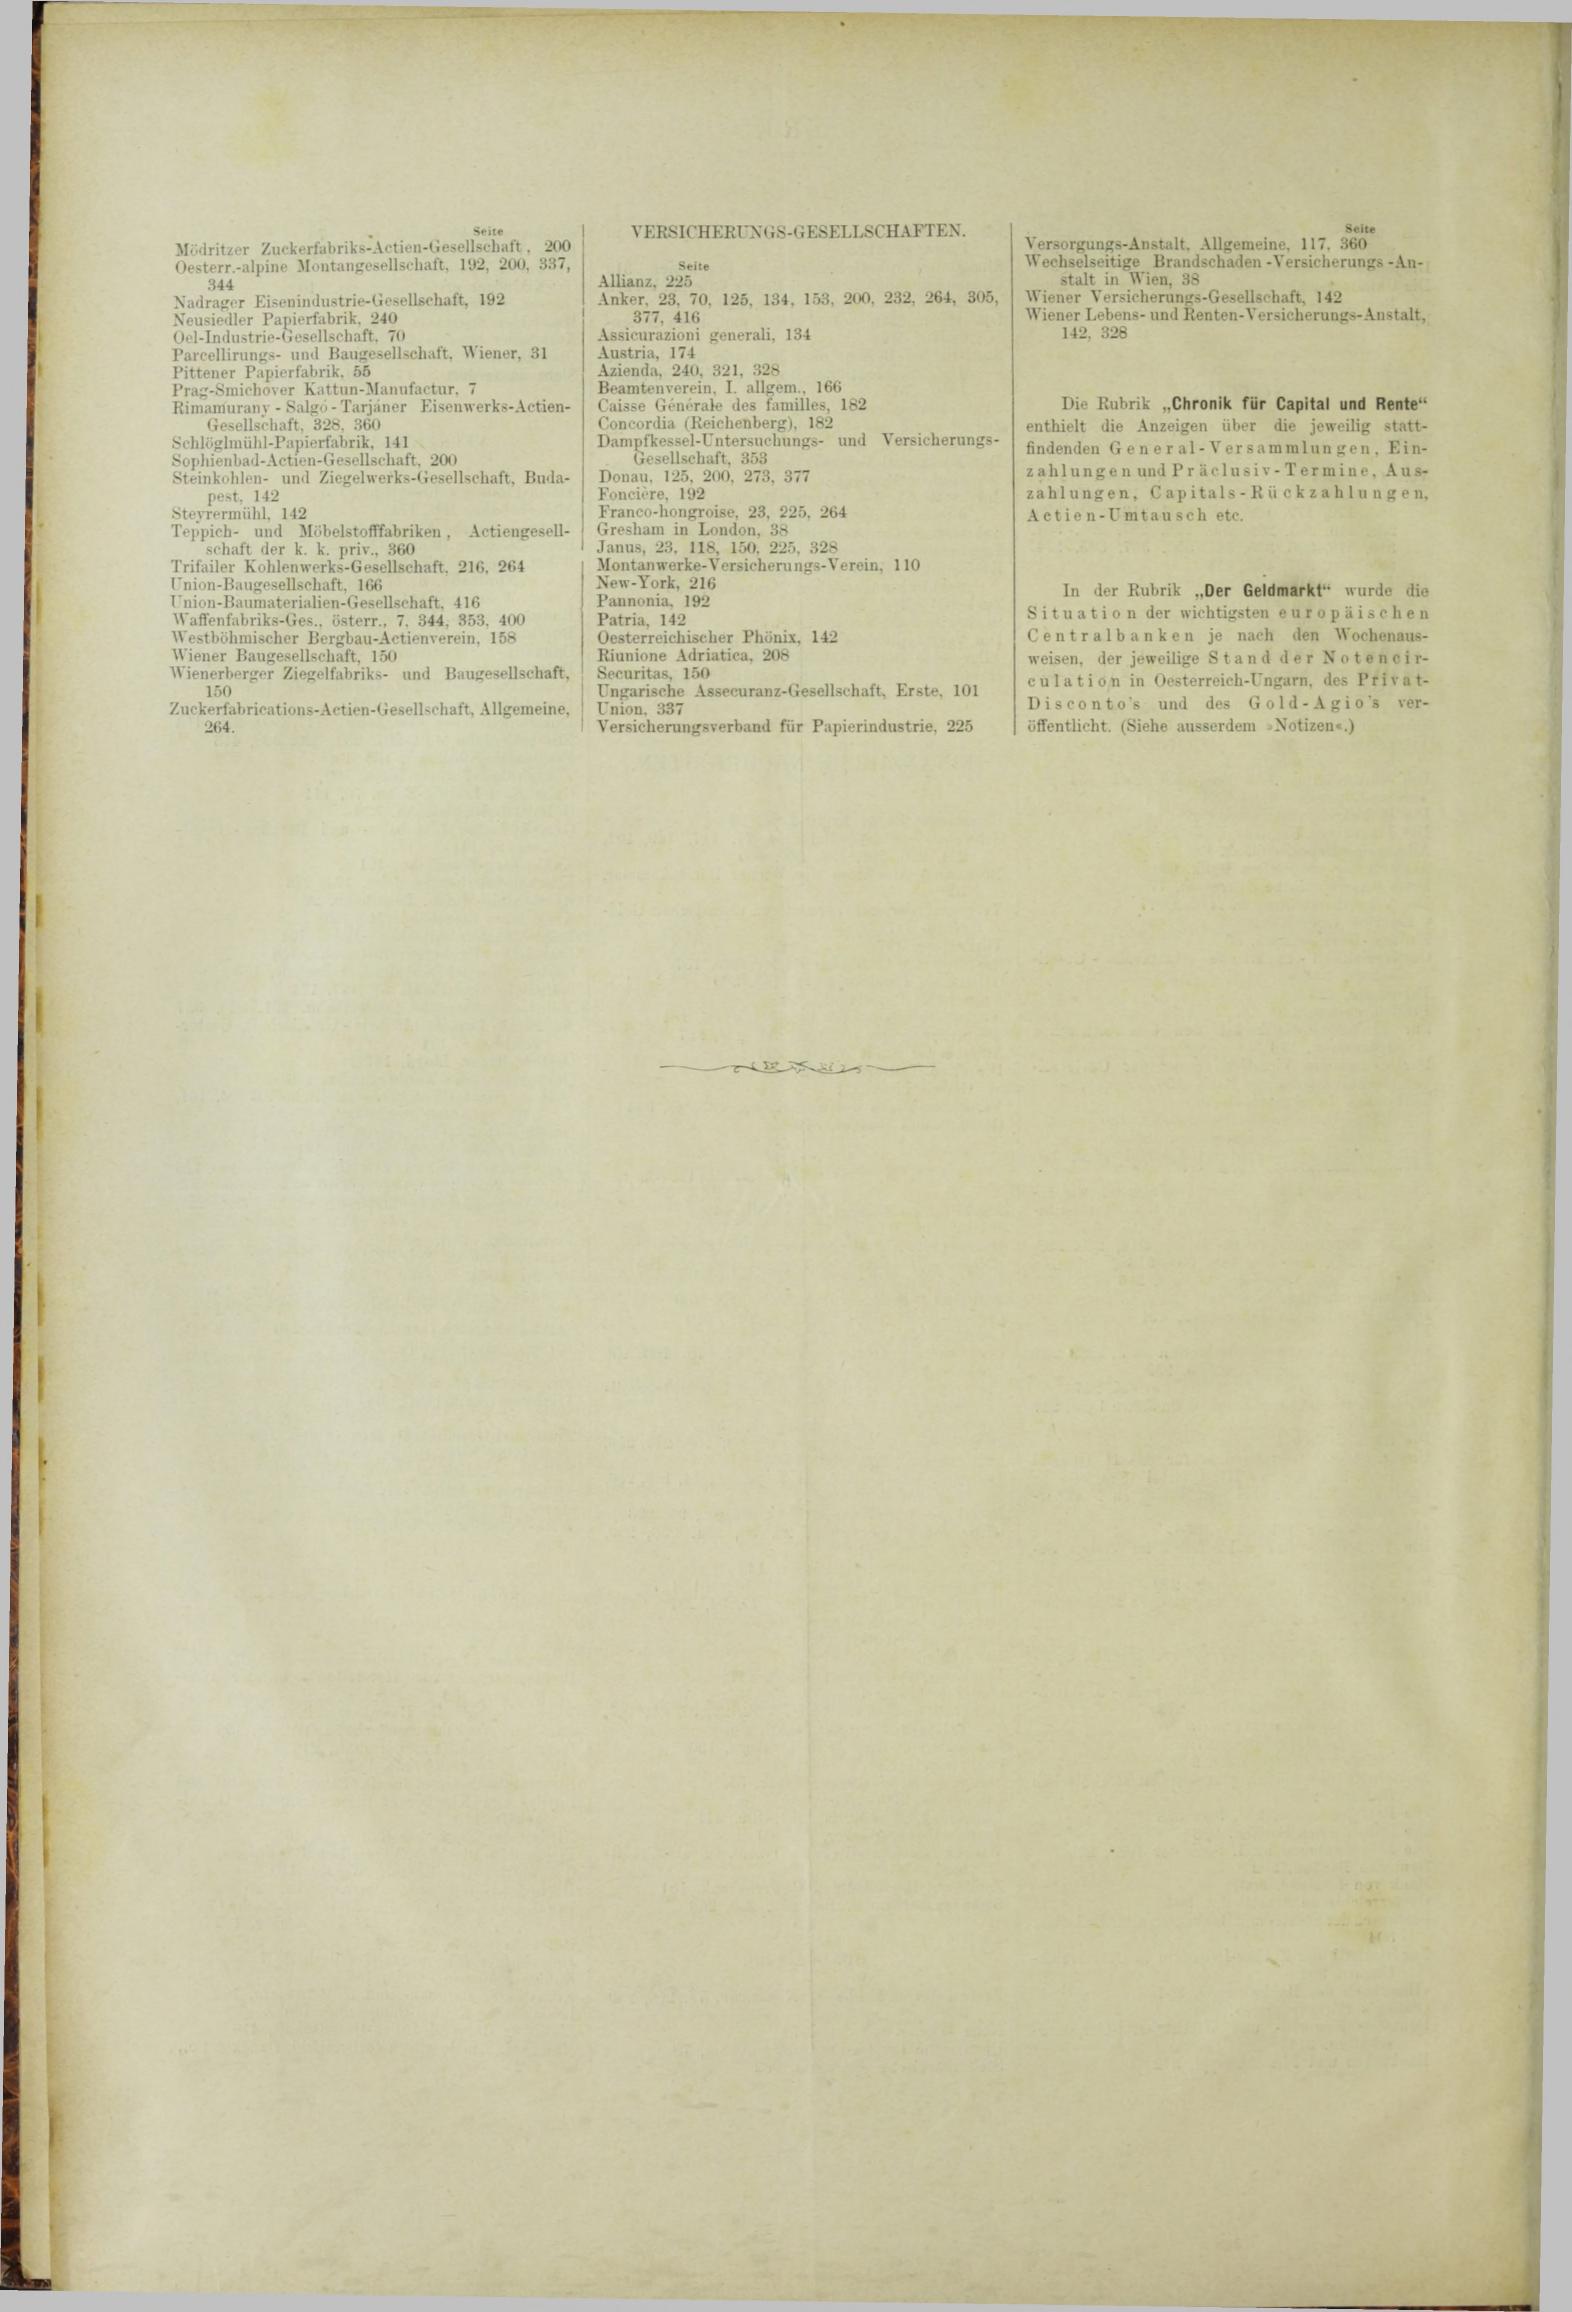 Der Tresor 28.12.1883 - Seite 12